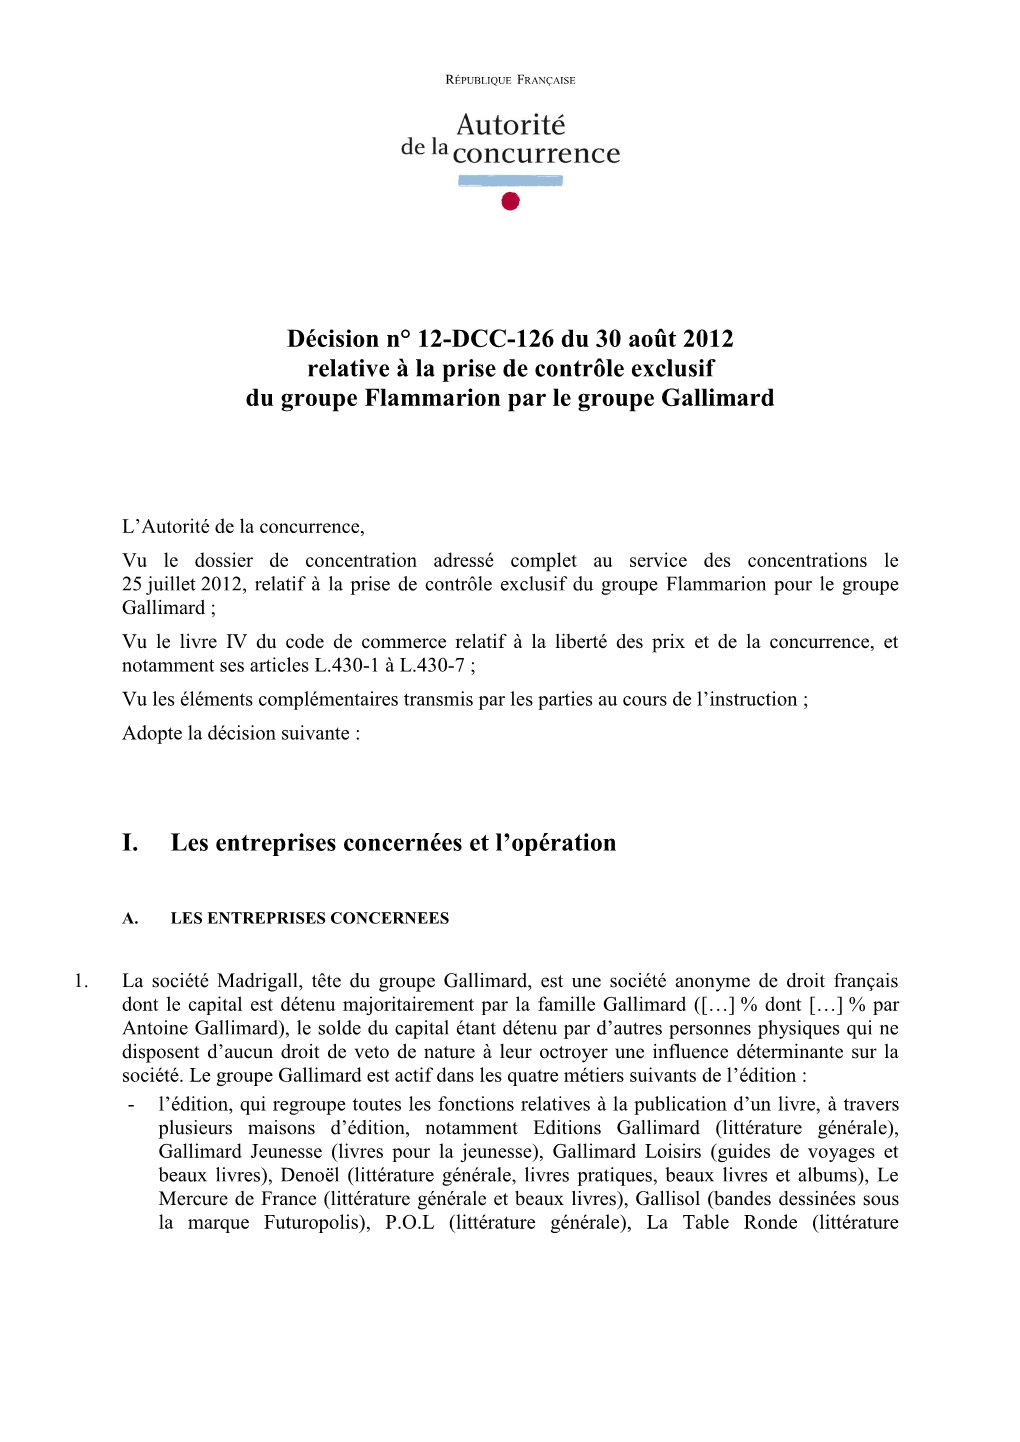 Décision N° 12-DCC-126 Du 30 Août 2012 Relative À La Prise De Contrôle Exclusif Du Groupe Flammarion Par Le Groupe Gallimard